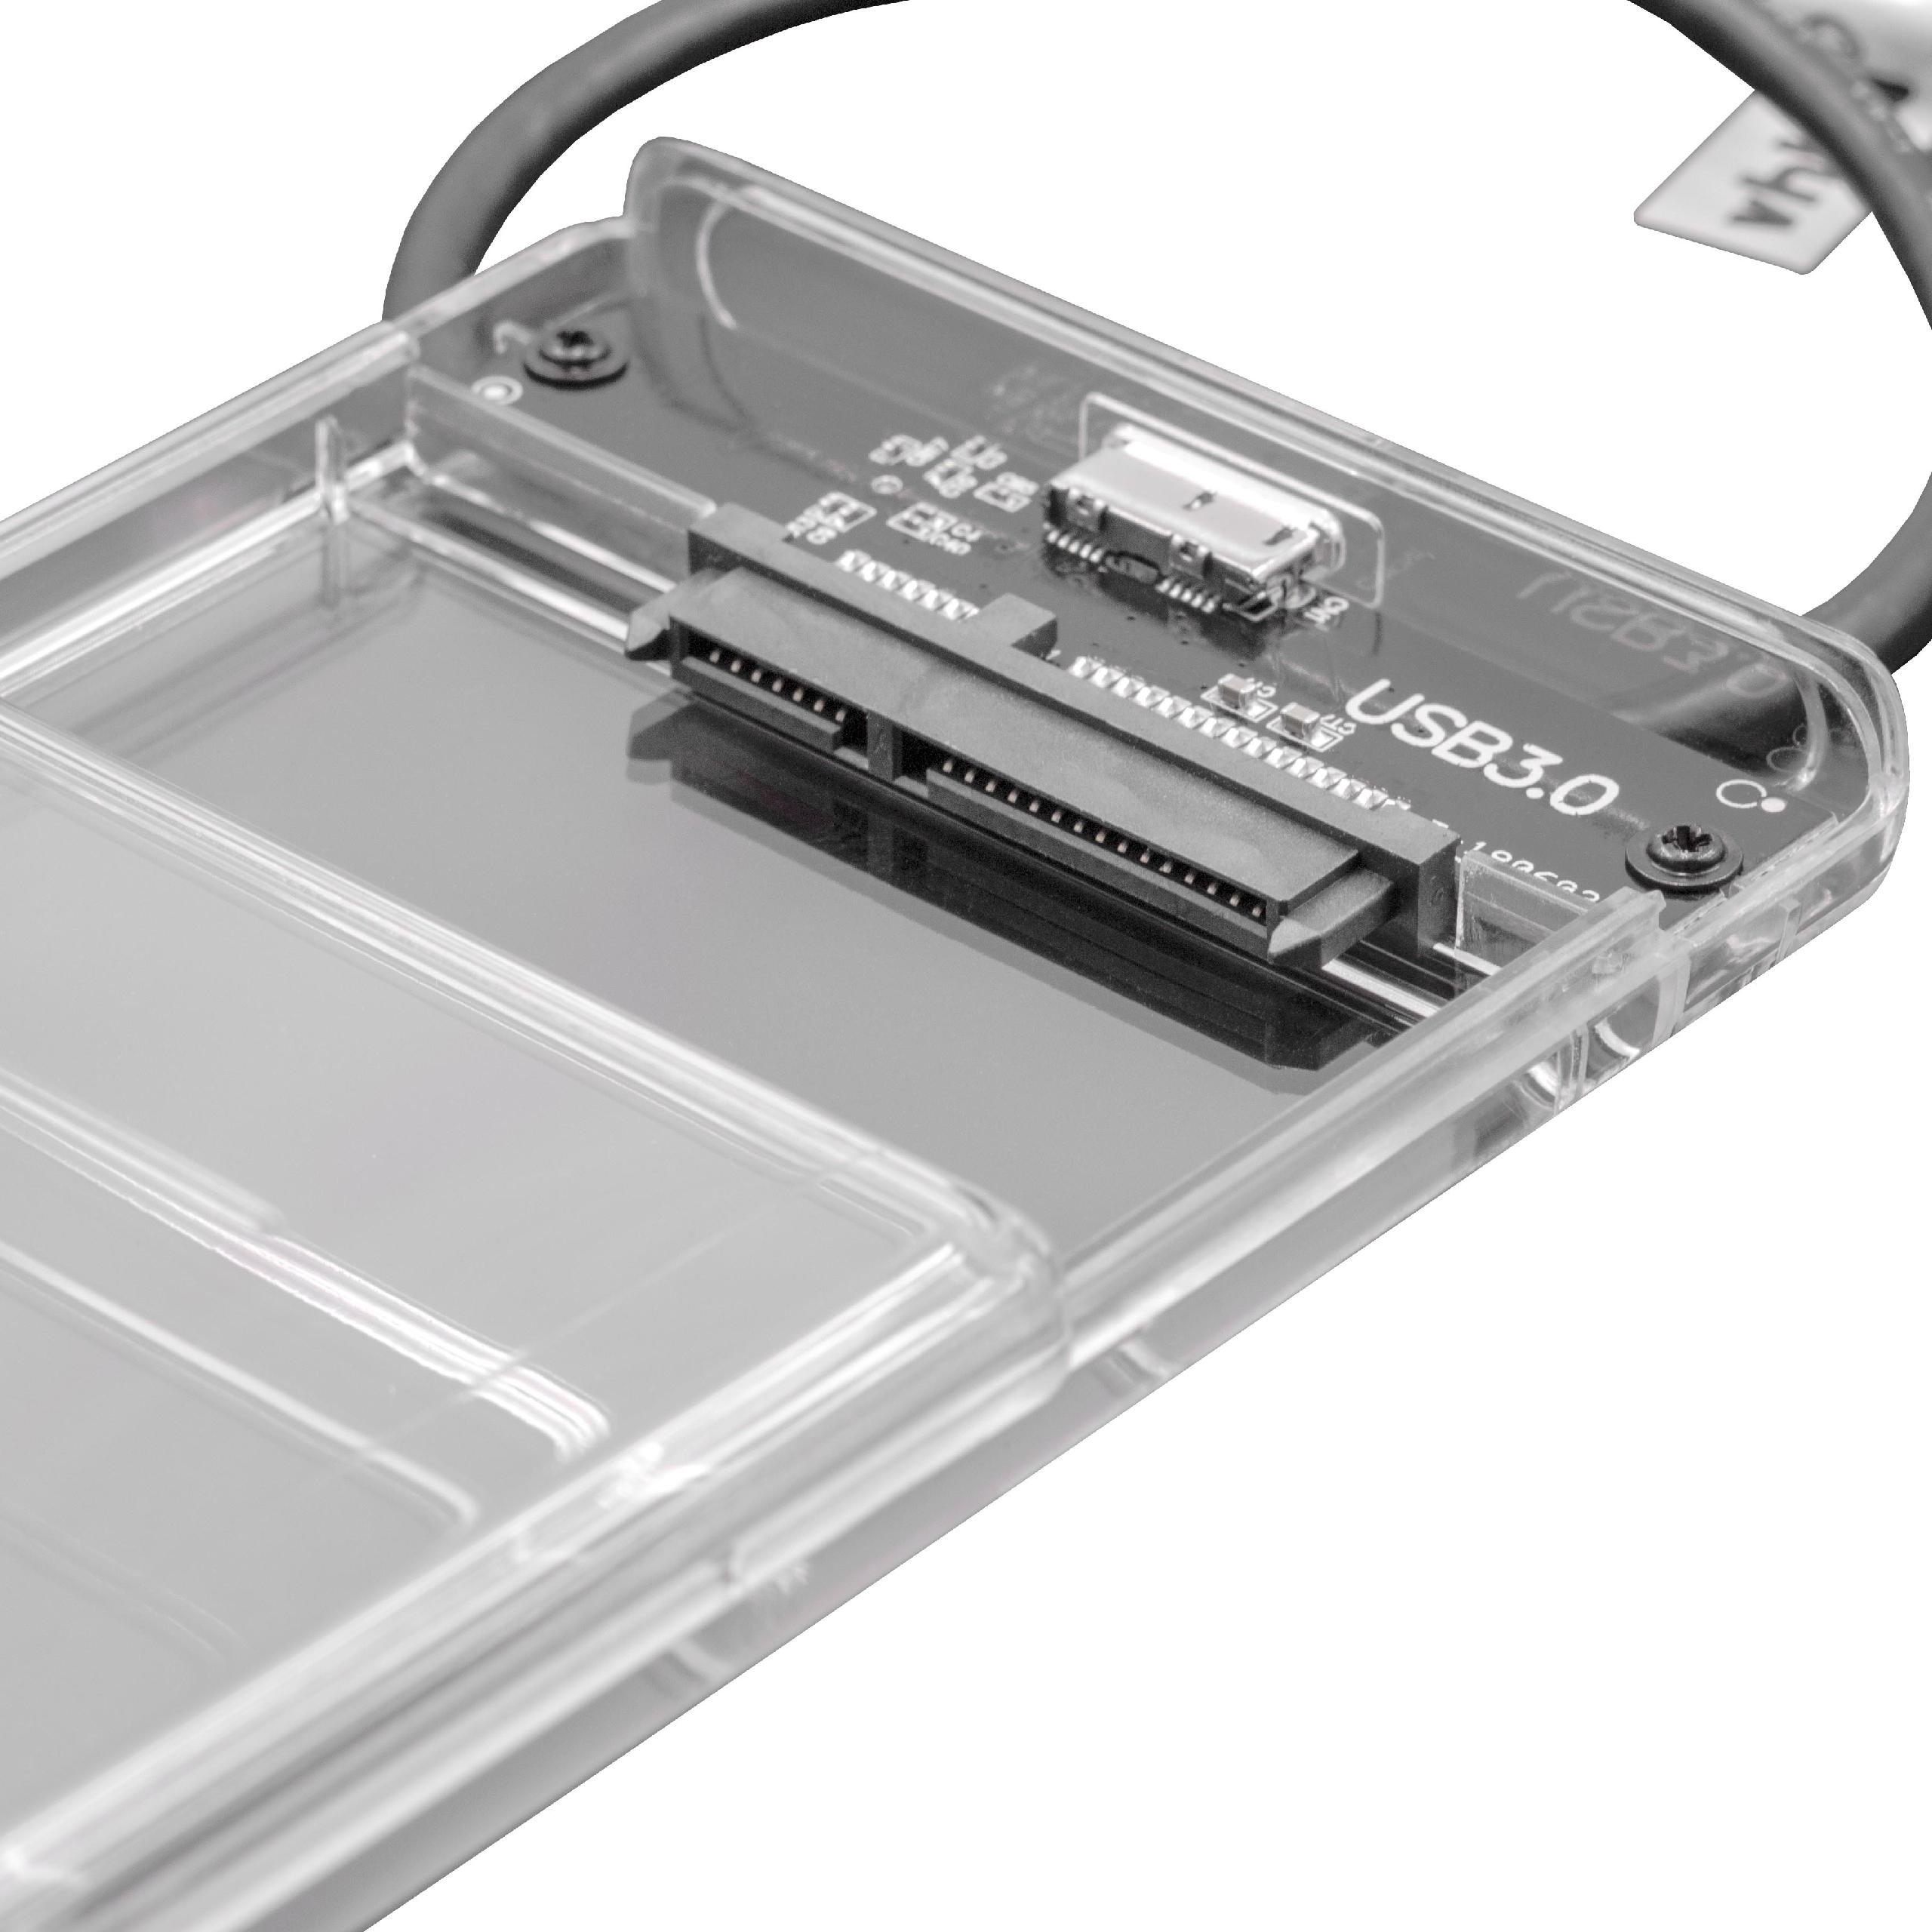 Cavo adattatore SATA III - USB 3.0 per hard disk esterno HDD, SSD , Plug & Play con case trasparente